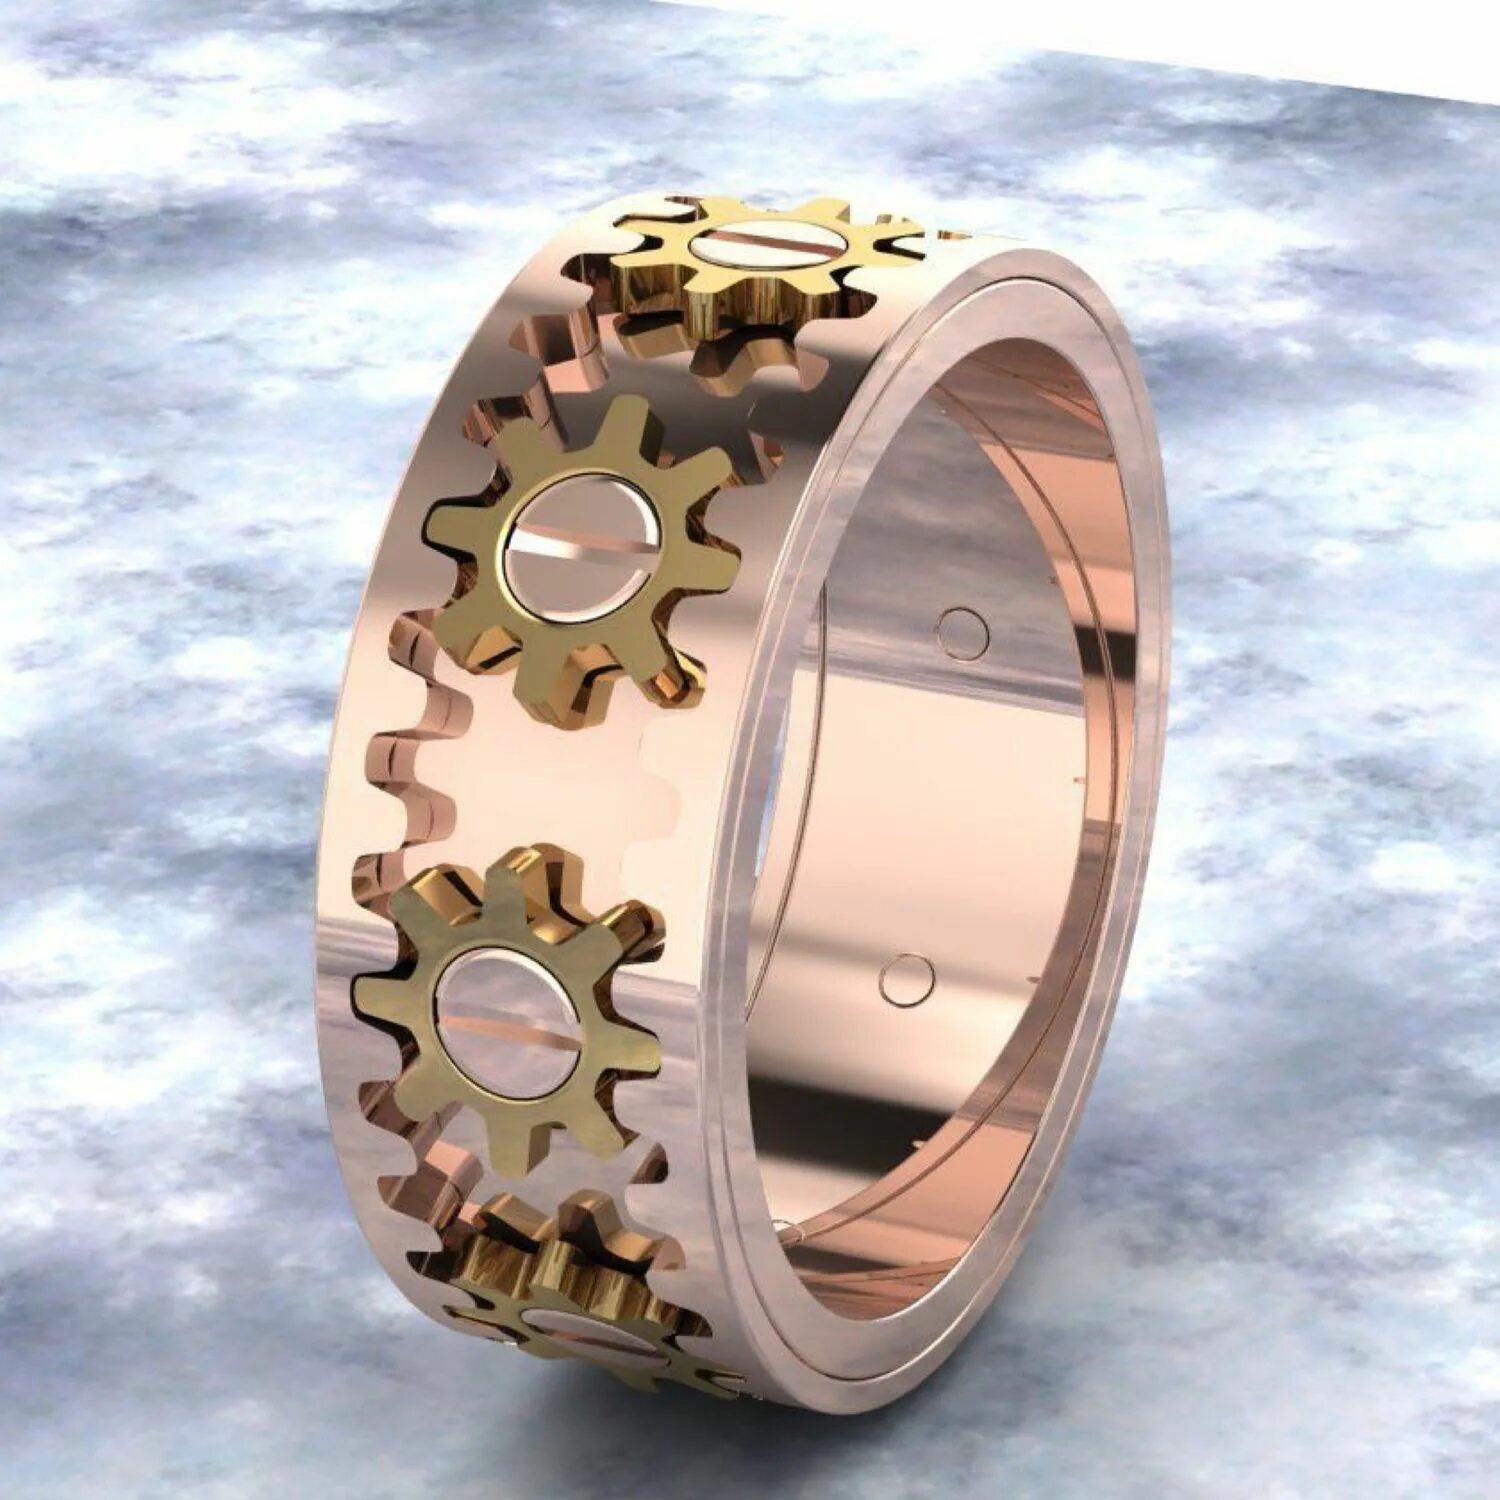 Кольца вращающаяся ось. Kinekt Gear Ring. Bristol кольцо с шестернями пб285. Кольцо с шестеренками Gear Ring. Gear Ring kinekt Design.